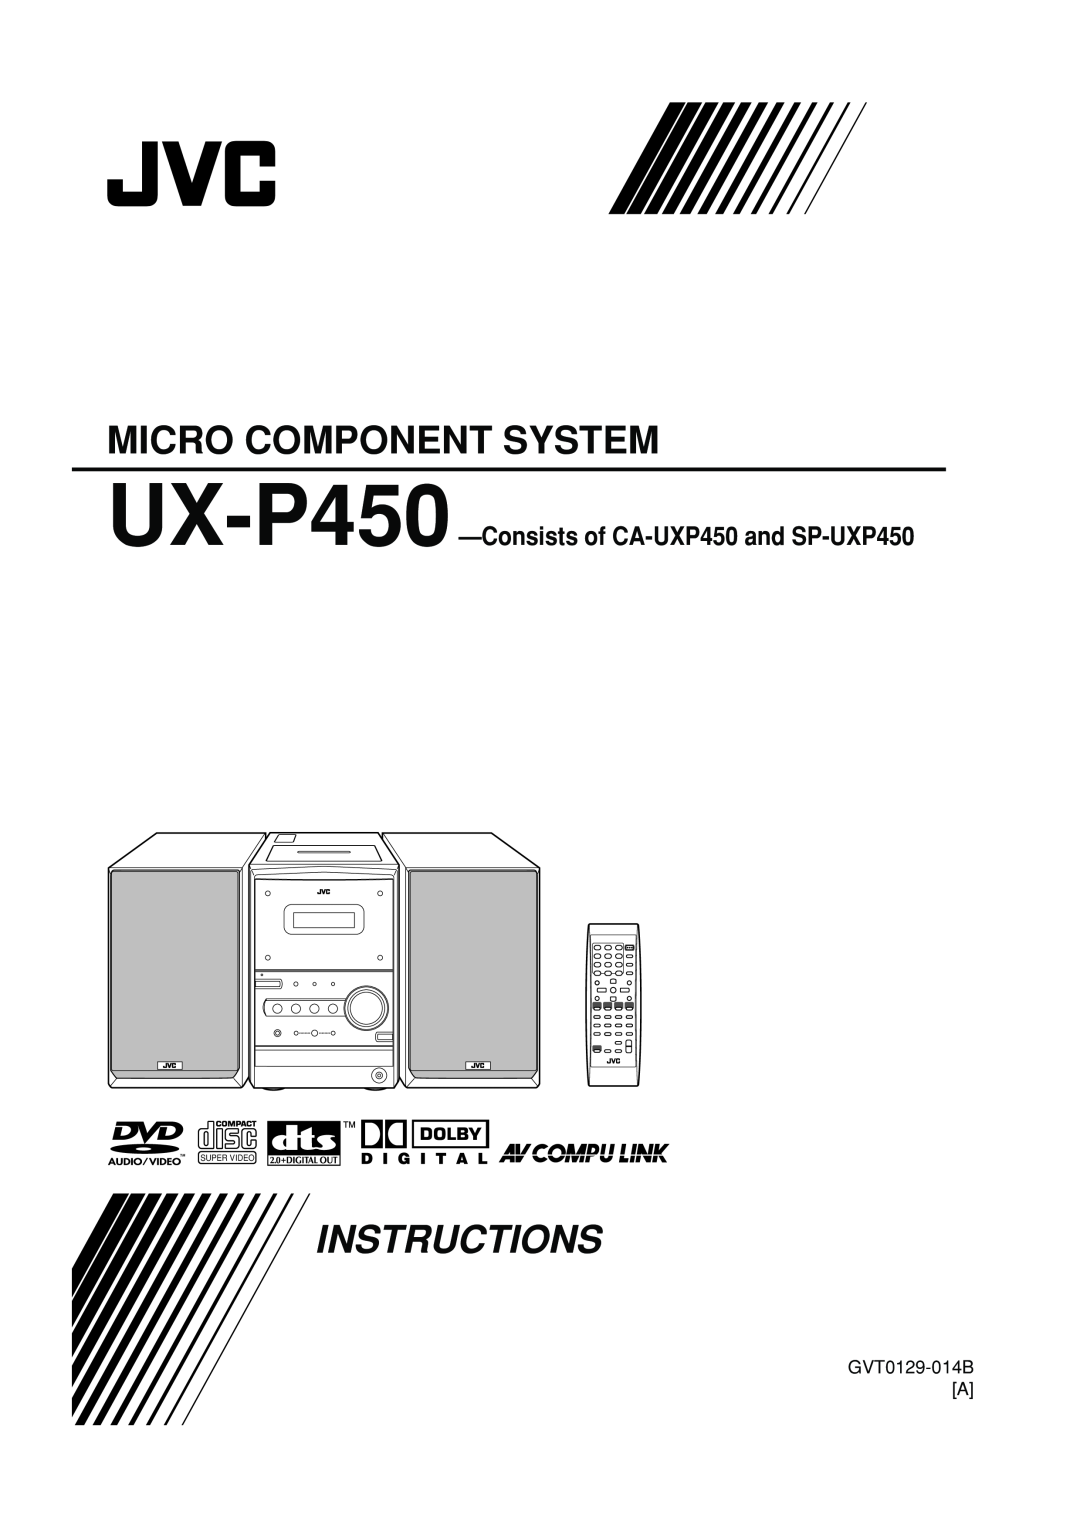 JVC manual GVT0129-014BA, Micro Component System, Instructions, UX-P450—Consistsof CA-UXP450and SP-UXP450, Super Video 